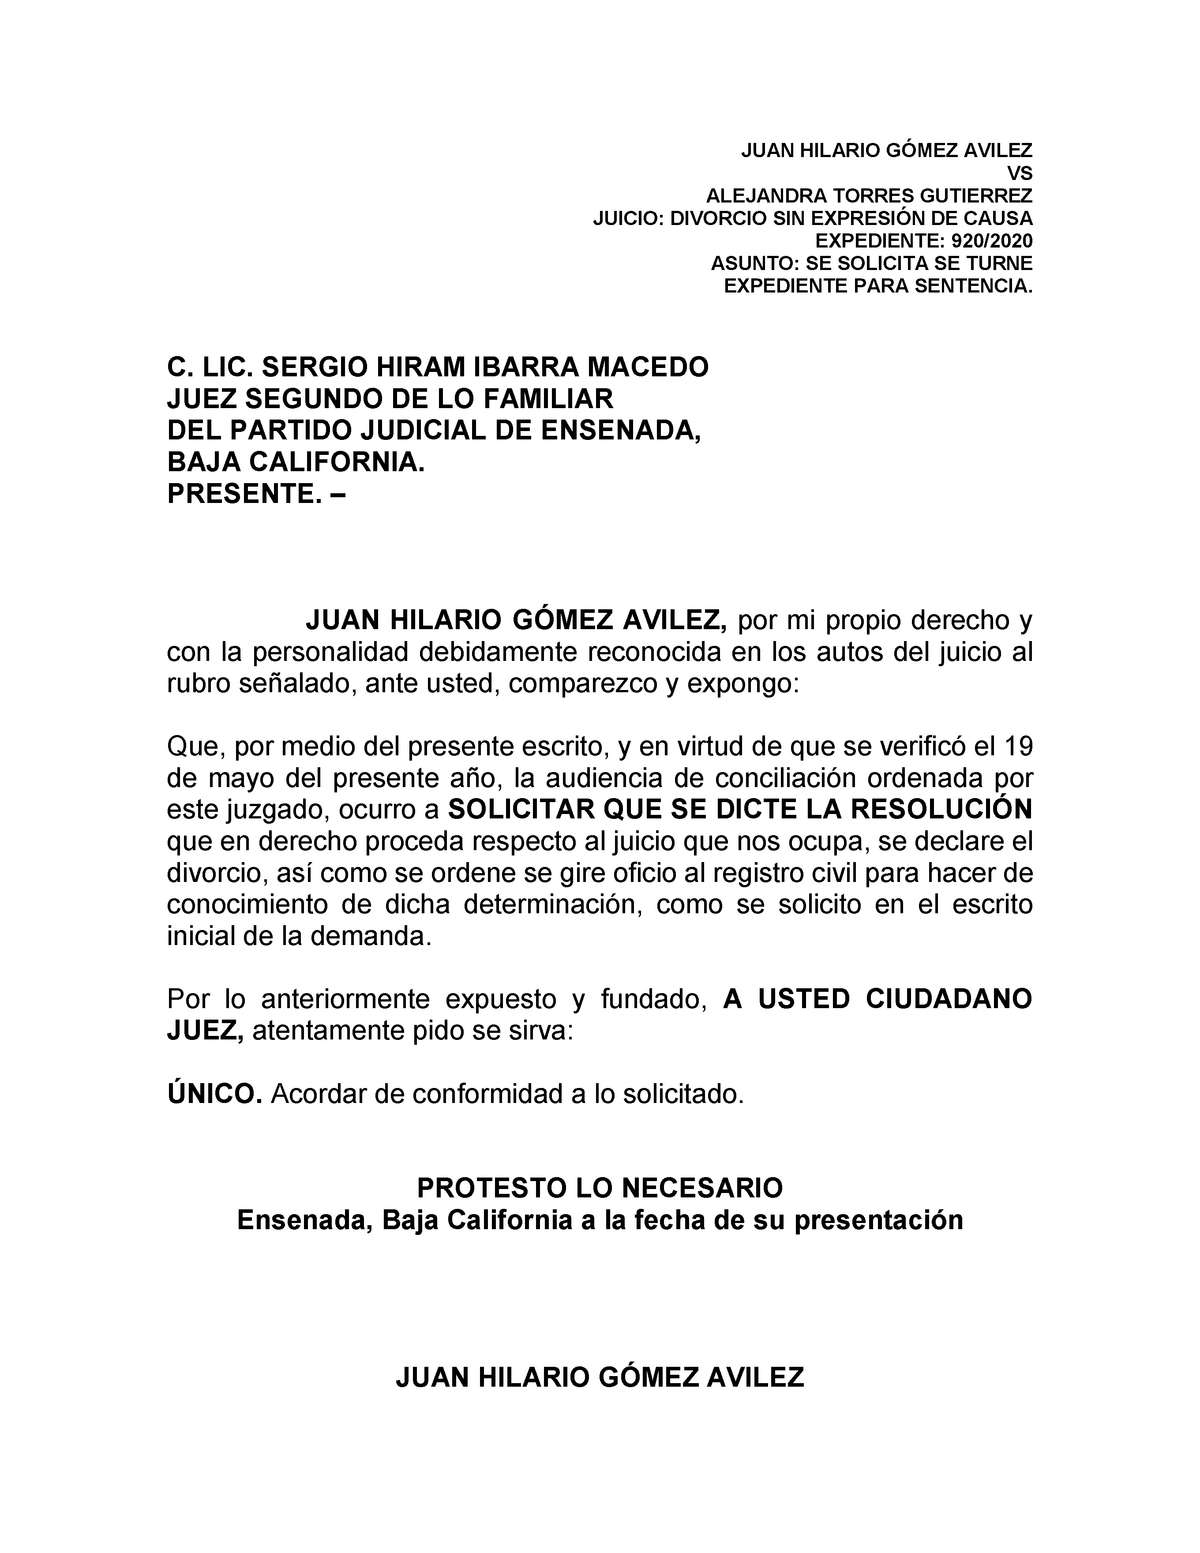 Escrito para solicitar se turne el expediente para sentencia - JUAN HILARIO  GÓMEZ AVILEZ VS - Studocu